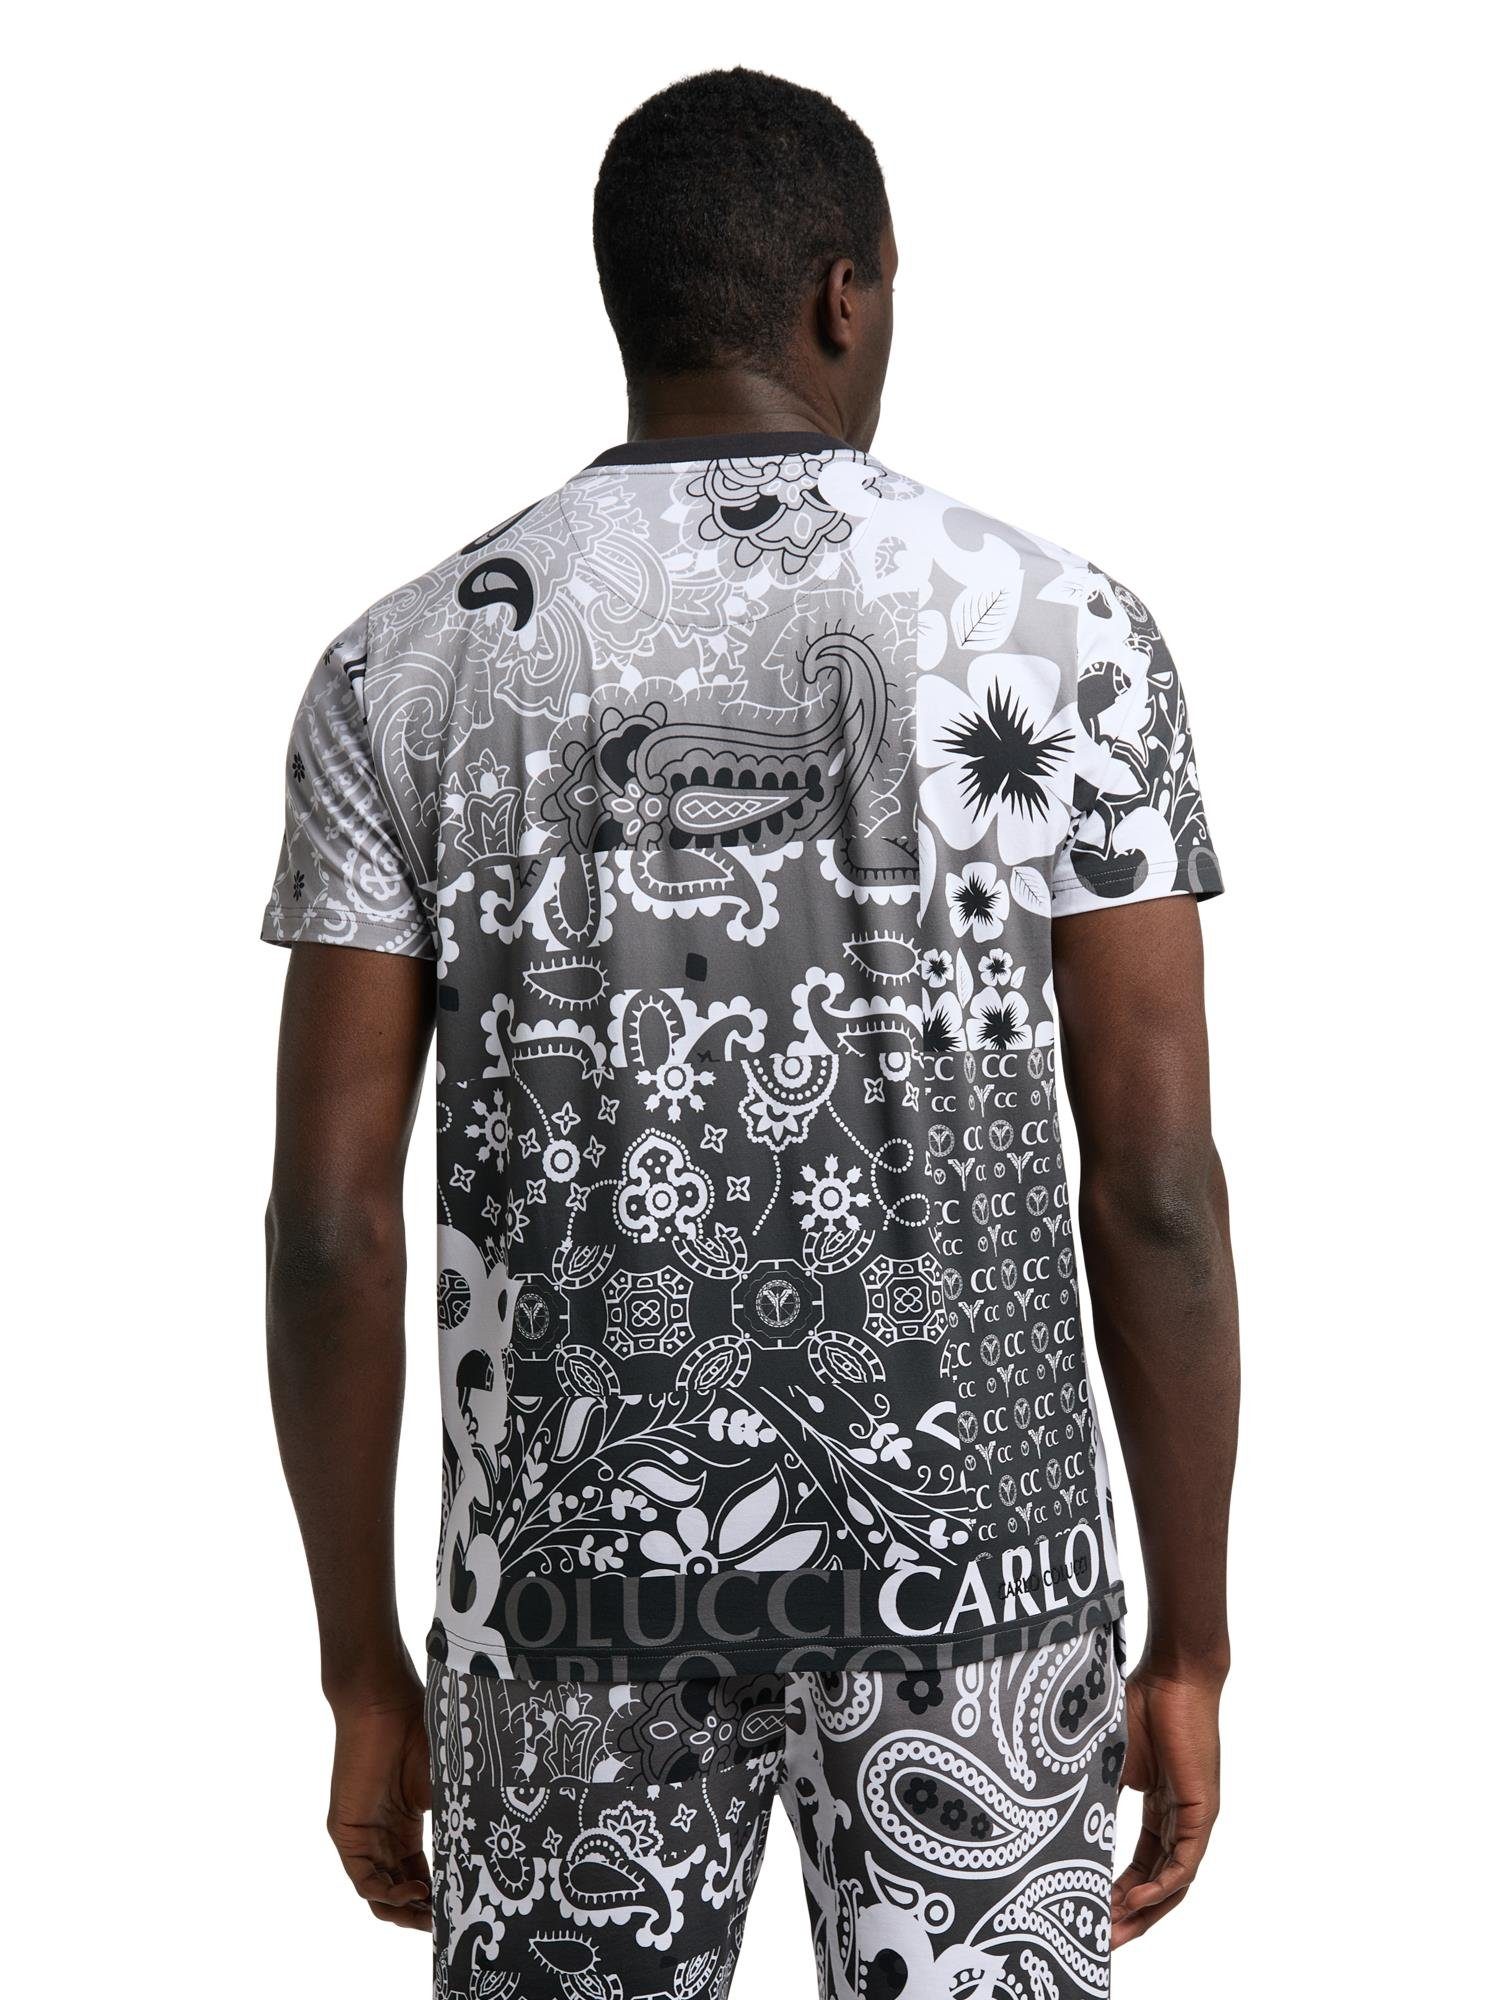 CARLO COLUCCI T-Shirt De Schwarz Weiß Carli 